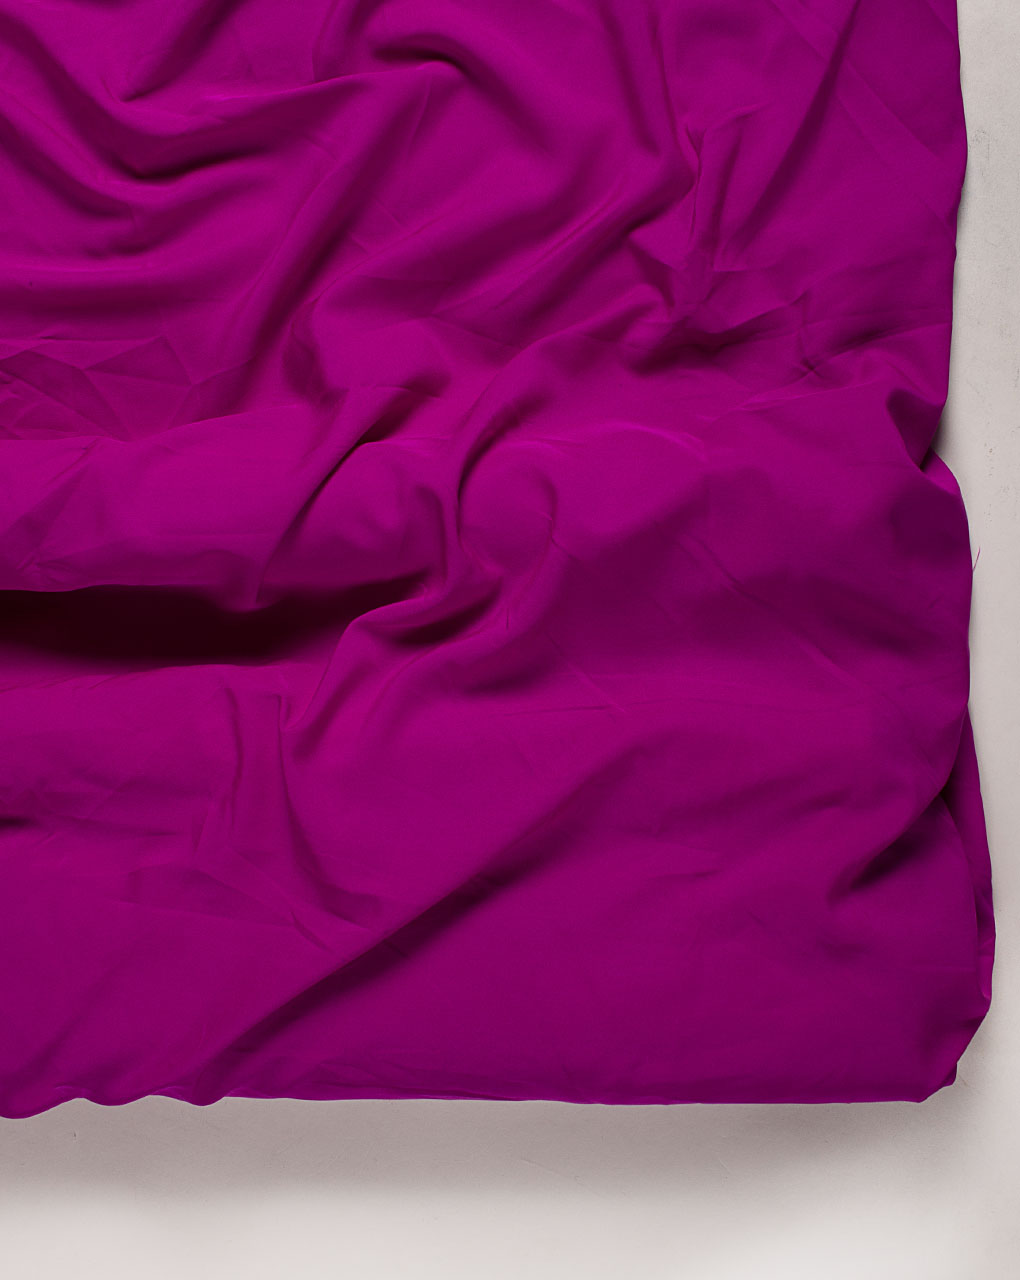 Fuchsia Plain Crepe Fabric